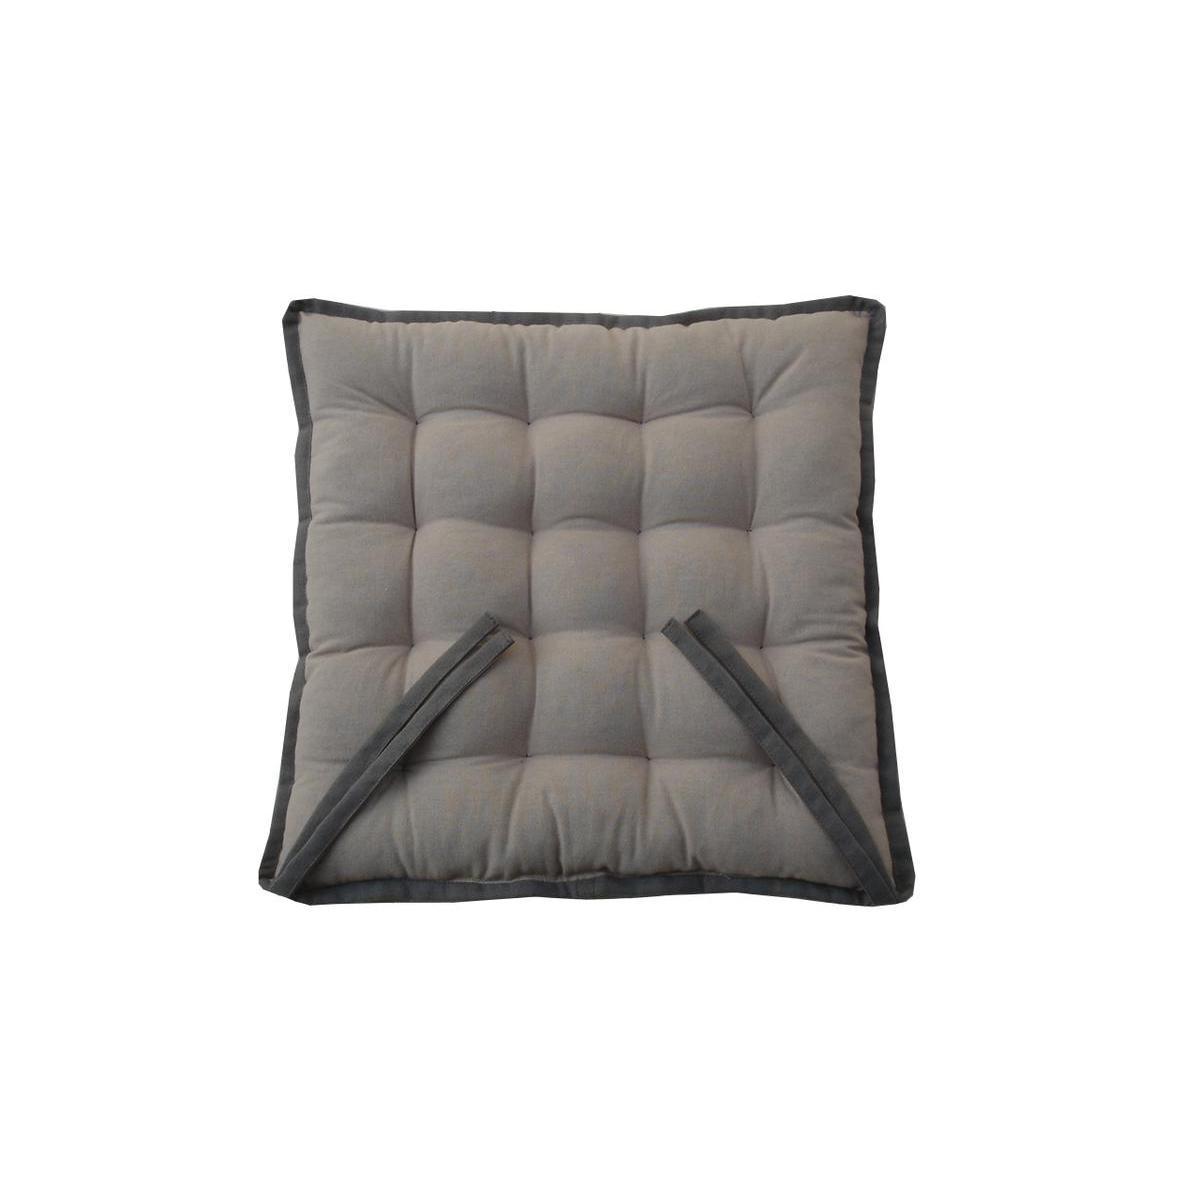 Galette de chaise bicolore - Coton - 40 x 40 cm - Gris